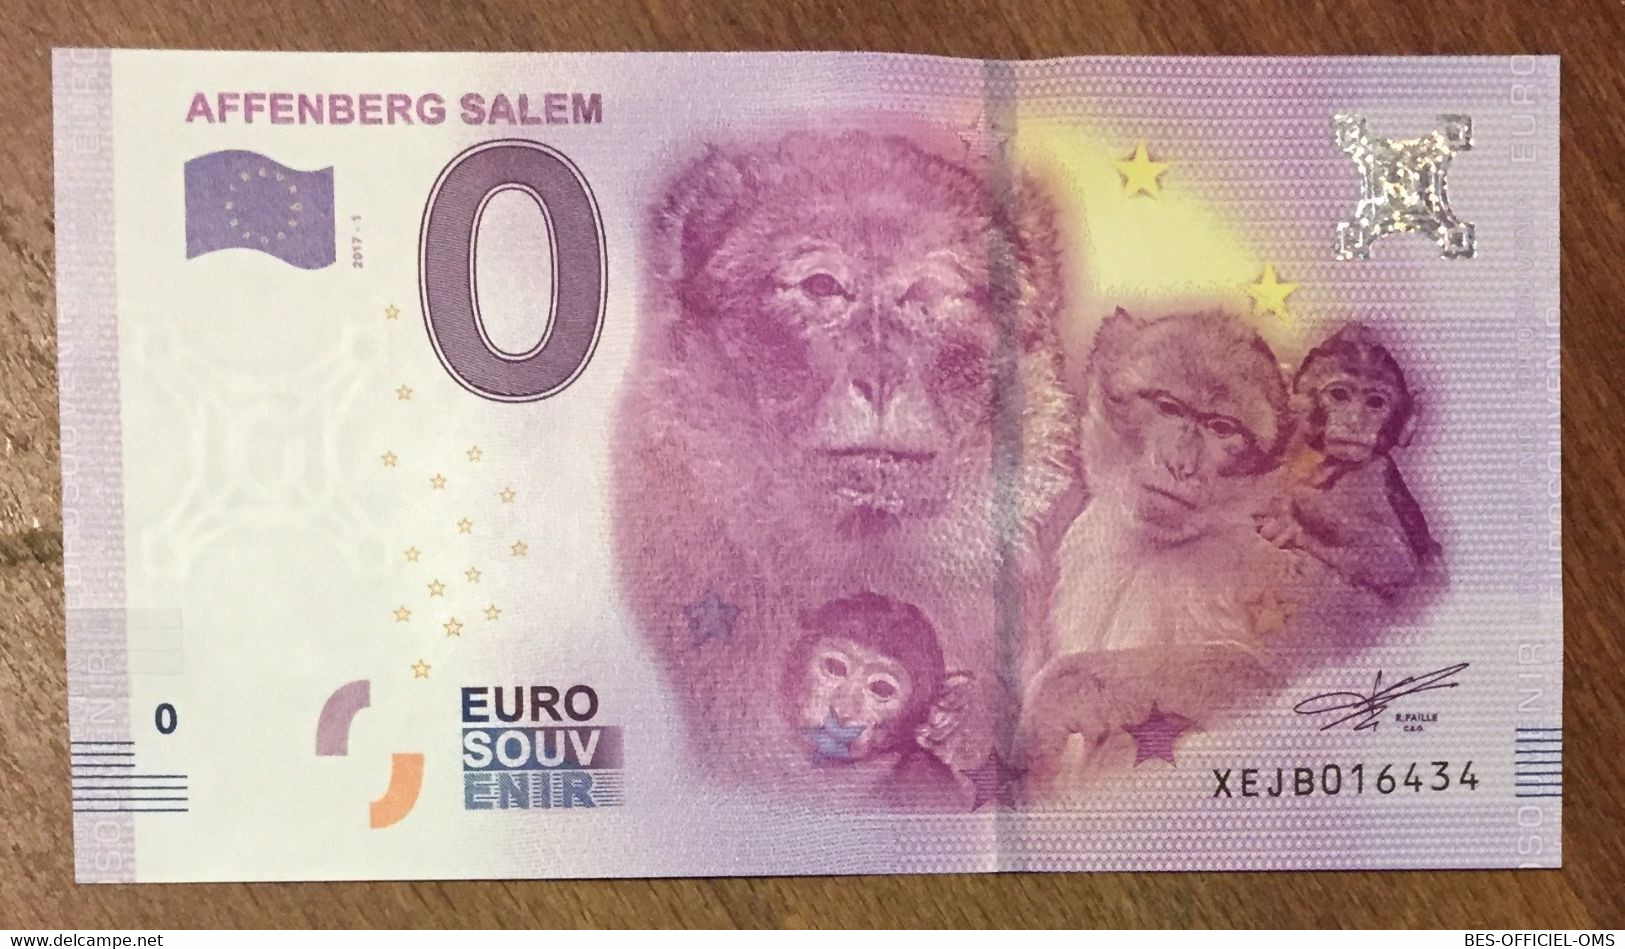 2017 BILLET 0 EURO SOUVENIR ALLEMAGNE DEUTSCHLAND AFFENBERG SALEM SINGES ZERO 0 EURO SCHEIN BANKNOTE PAPER MONEY - [17] Vals & Specimens